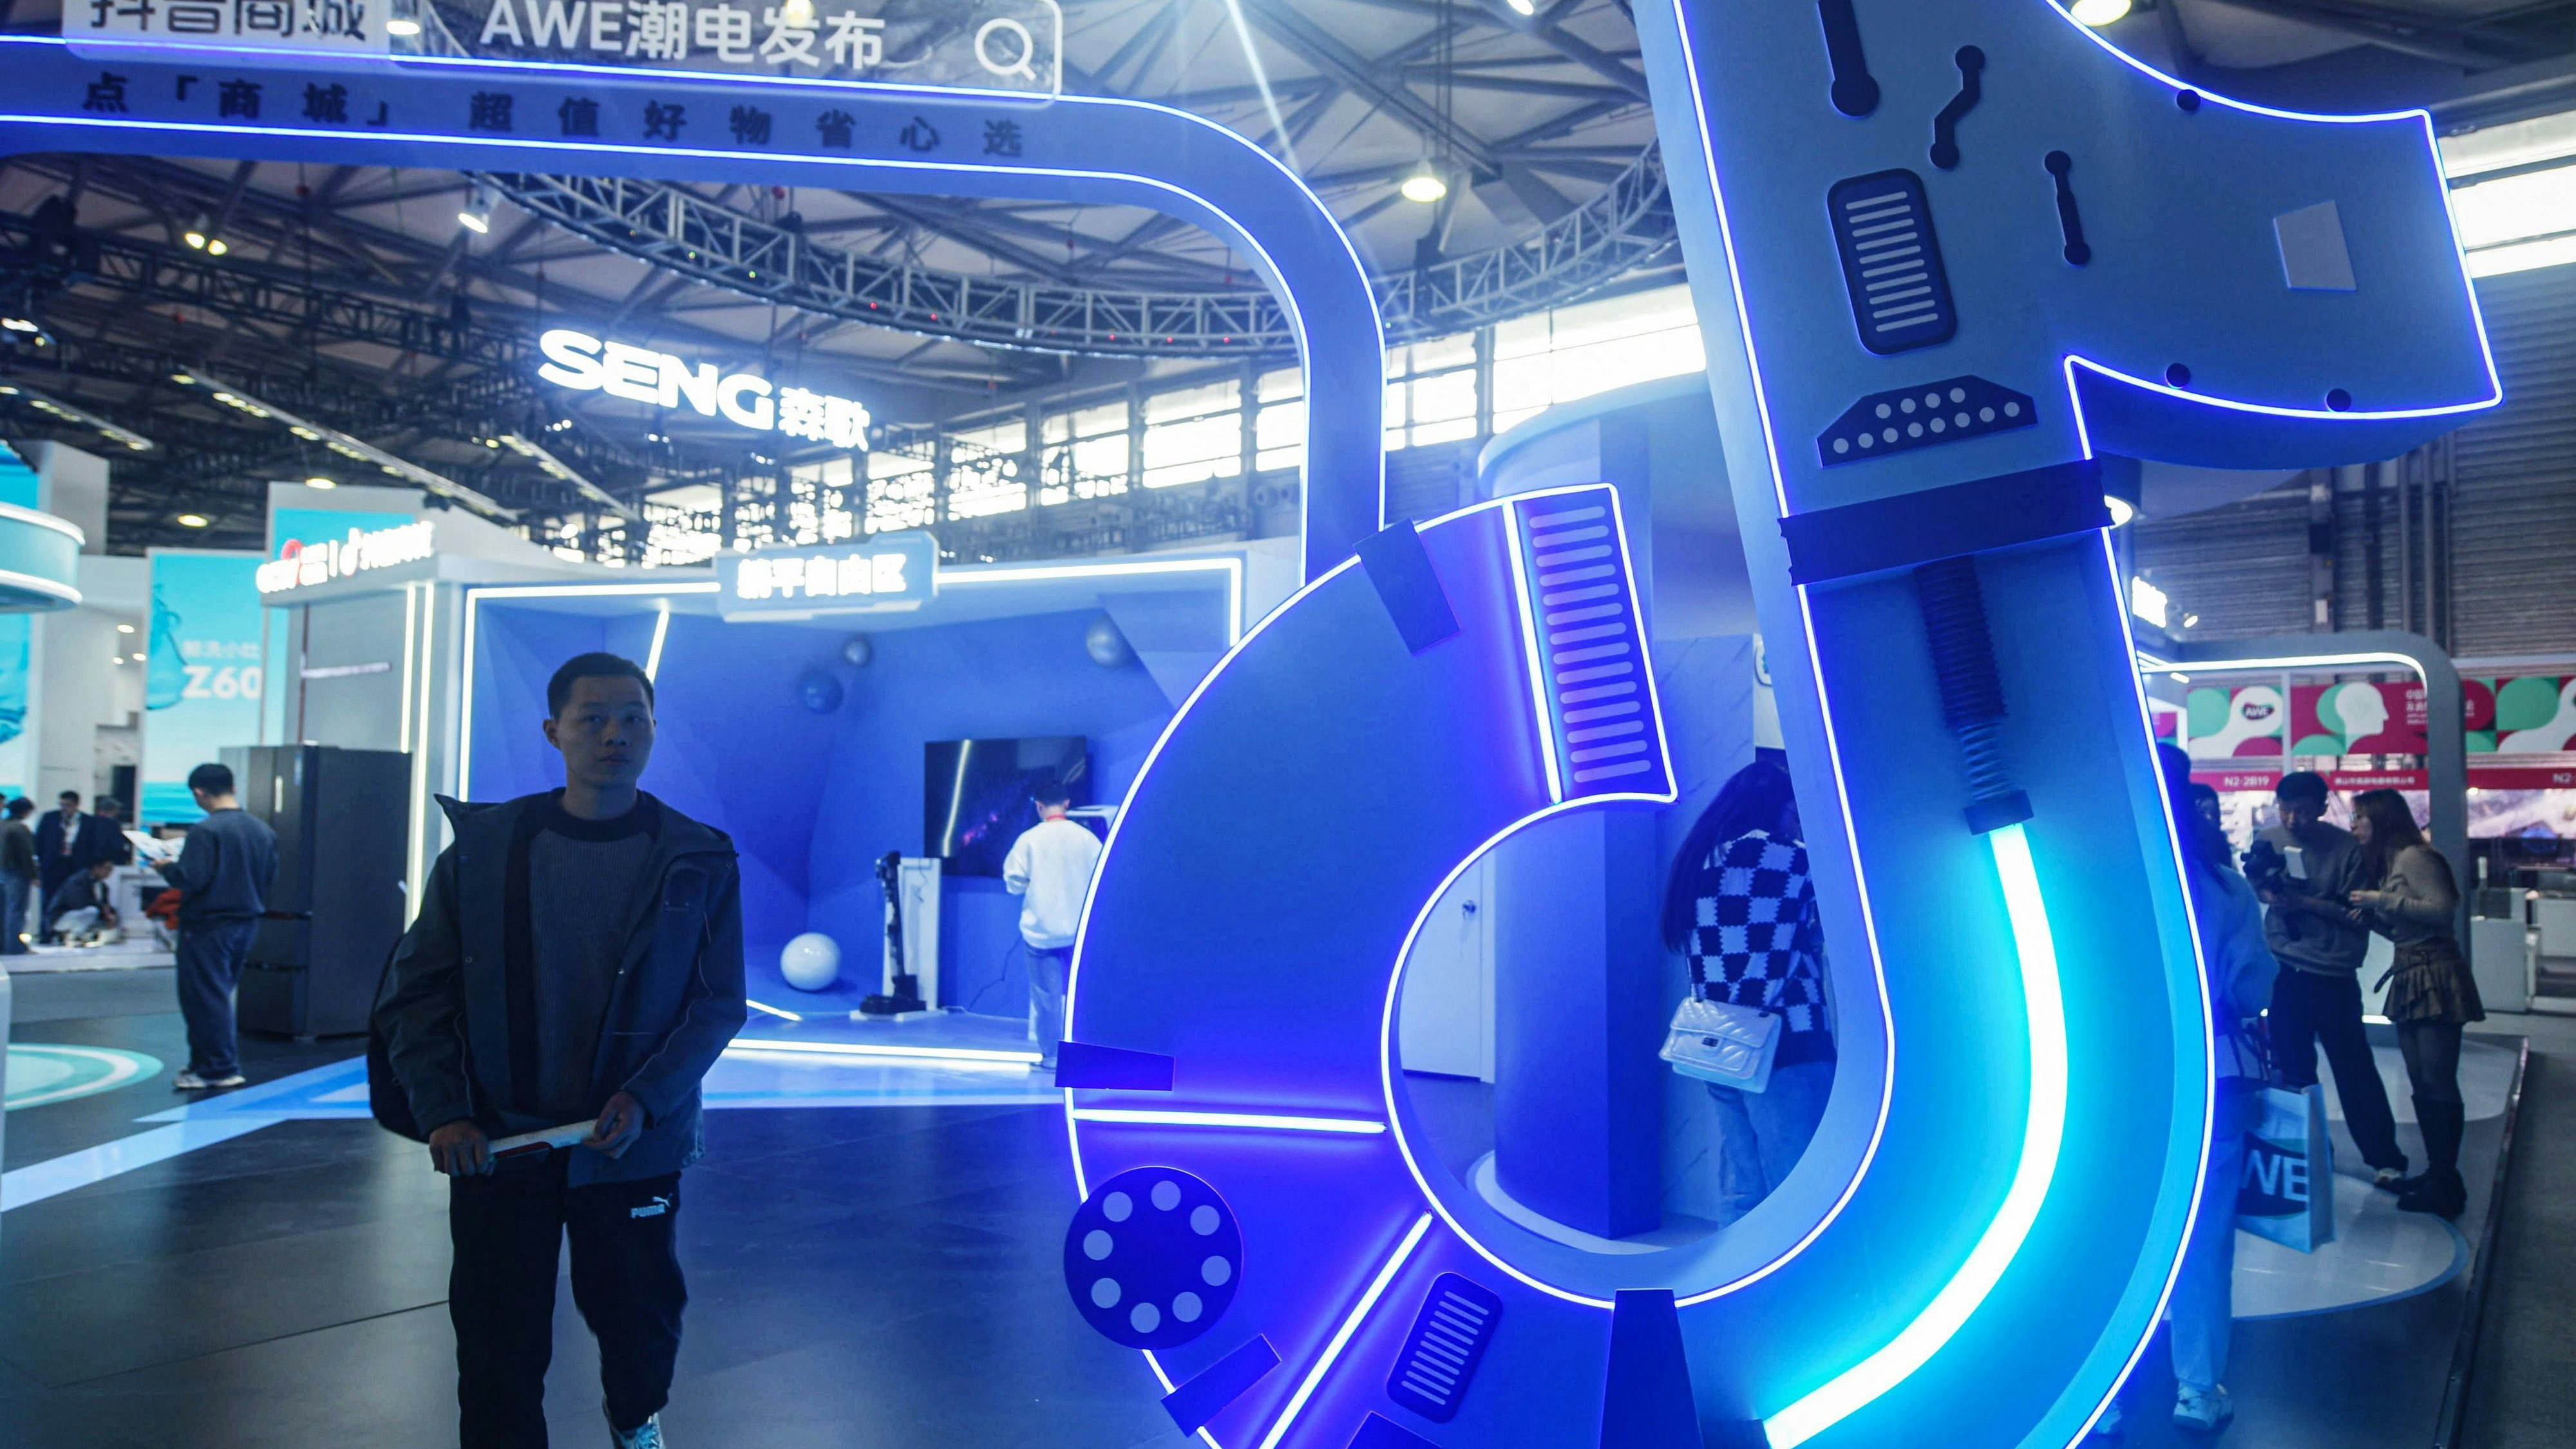 Verkaufsstand von Tiktok auf der "Appliance &amp; Electronics World Expo" (AWE) in Shanghai im März 2014